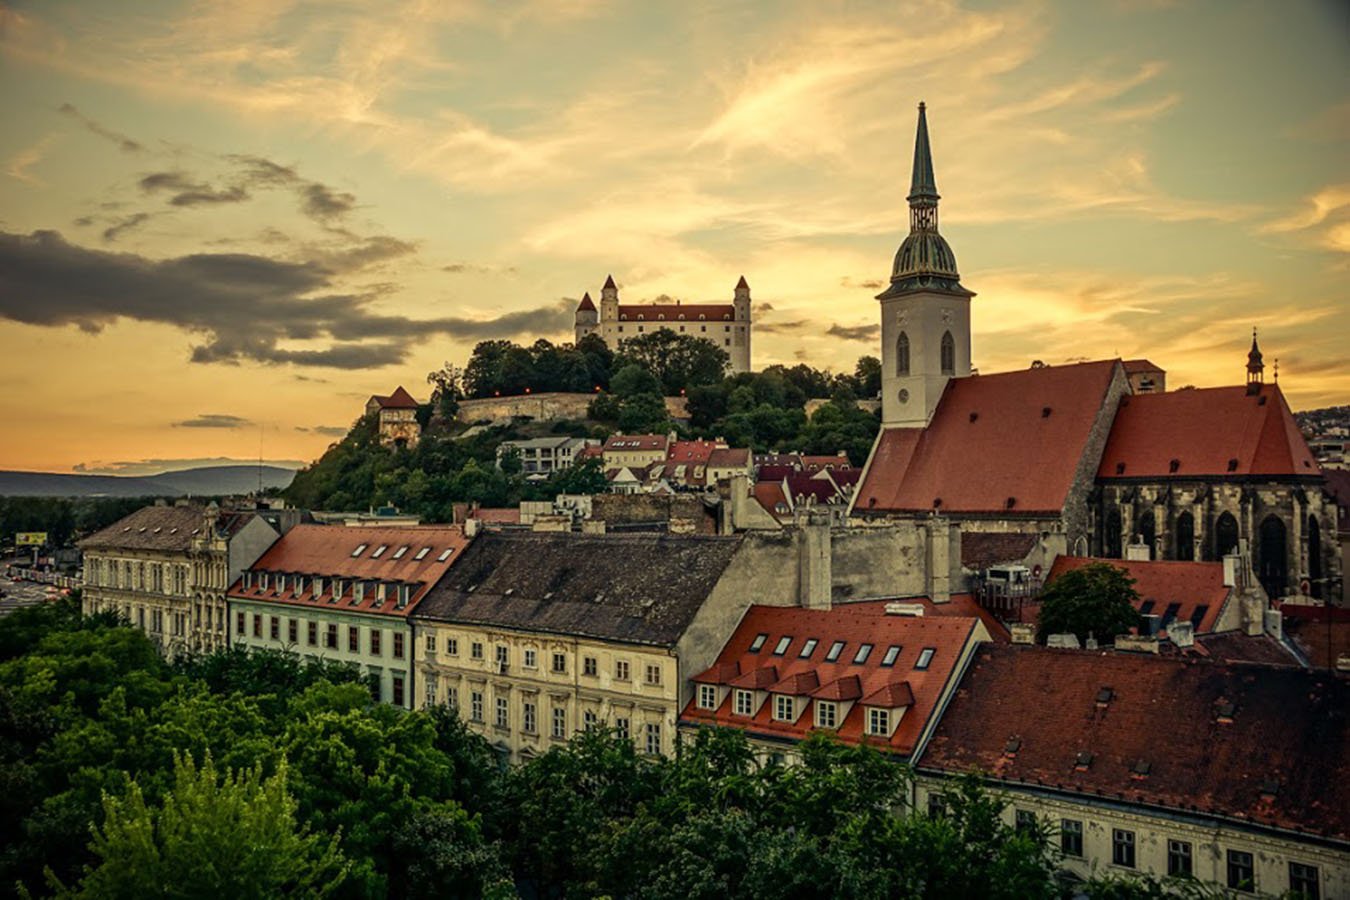 На фотографии изображена одна из городских достопримечательностей Словакии